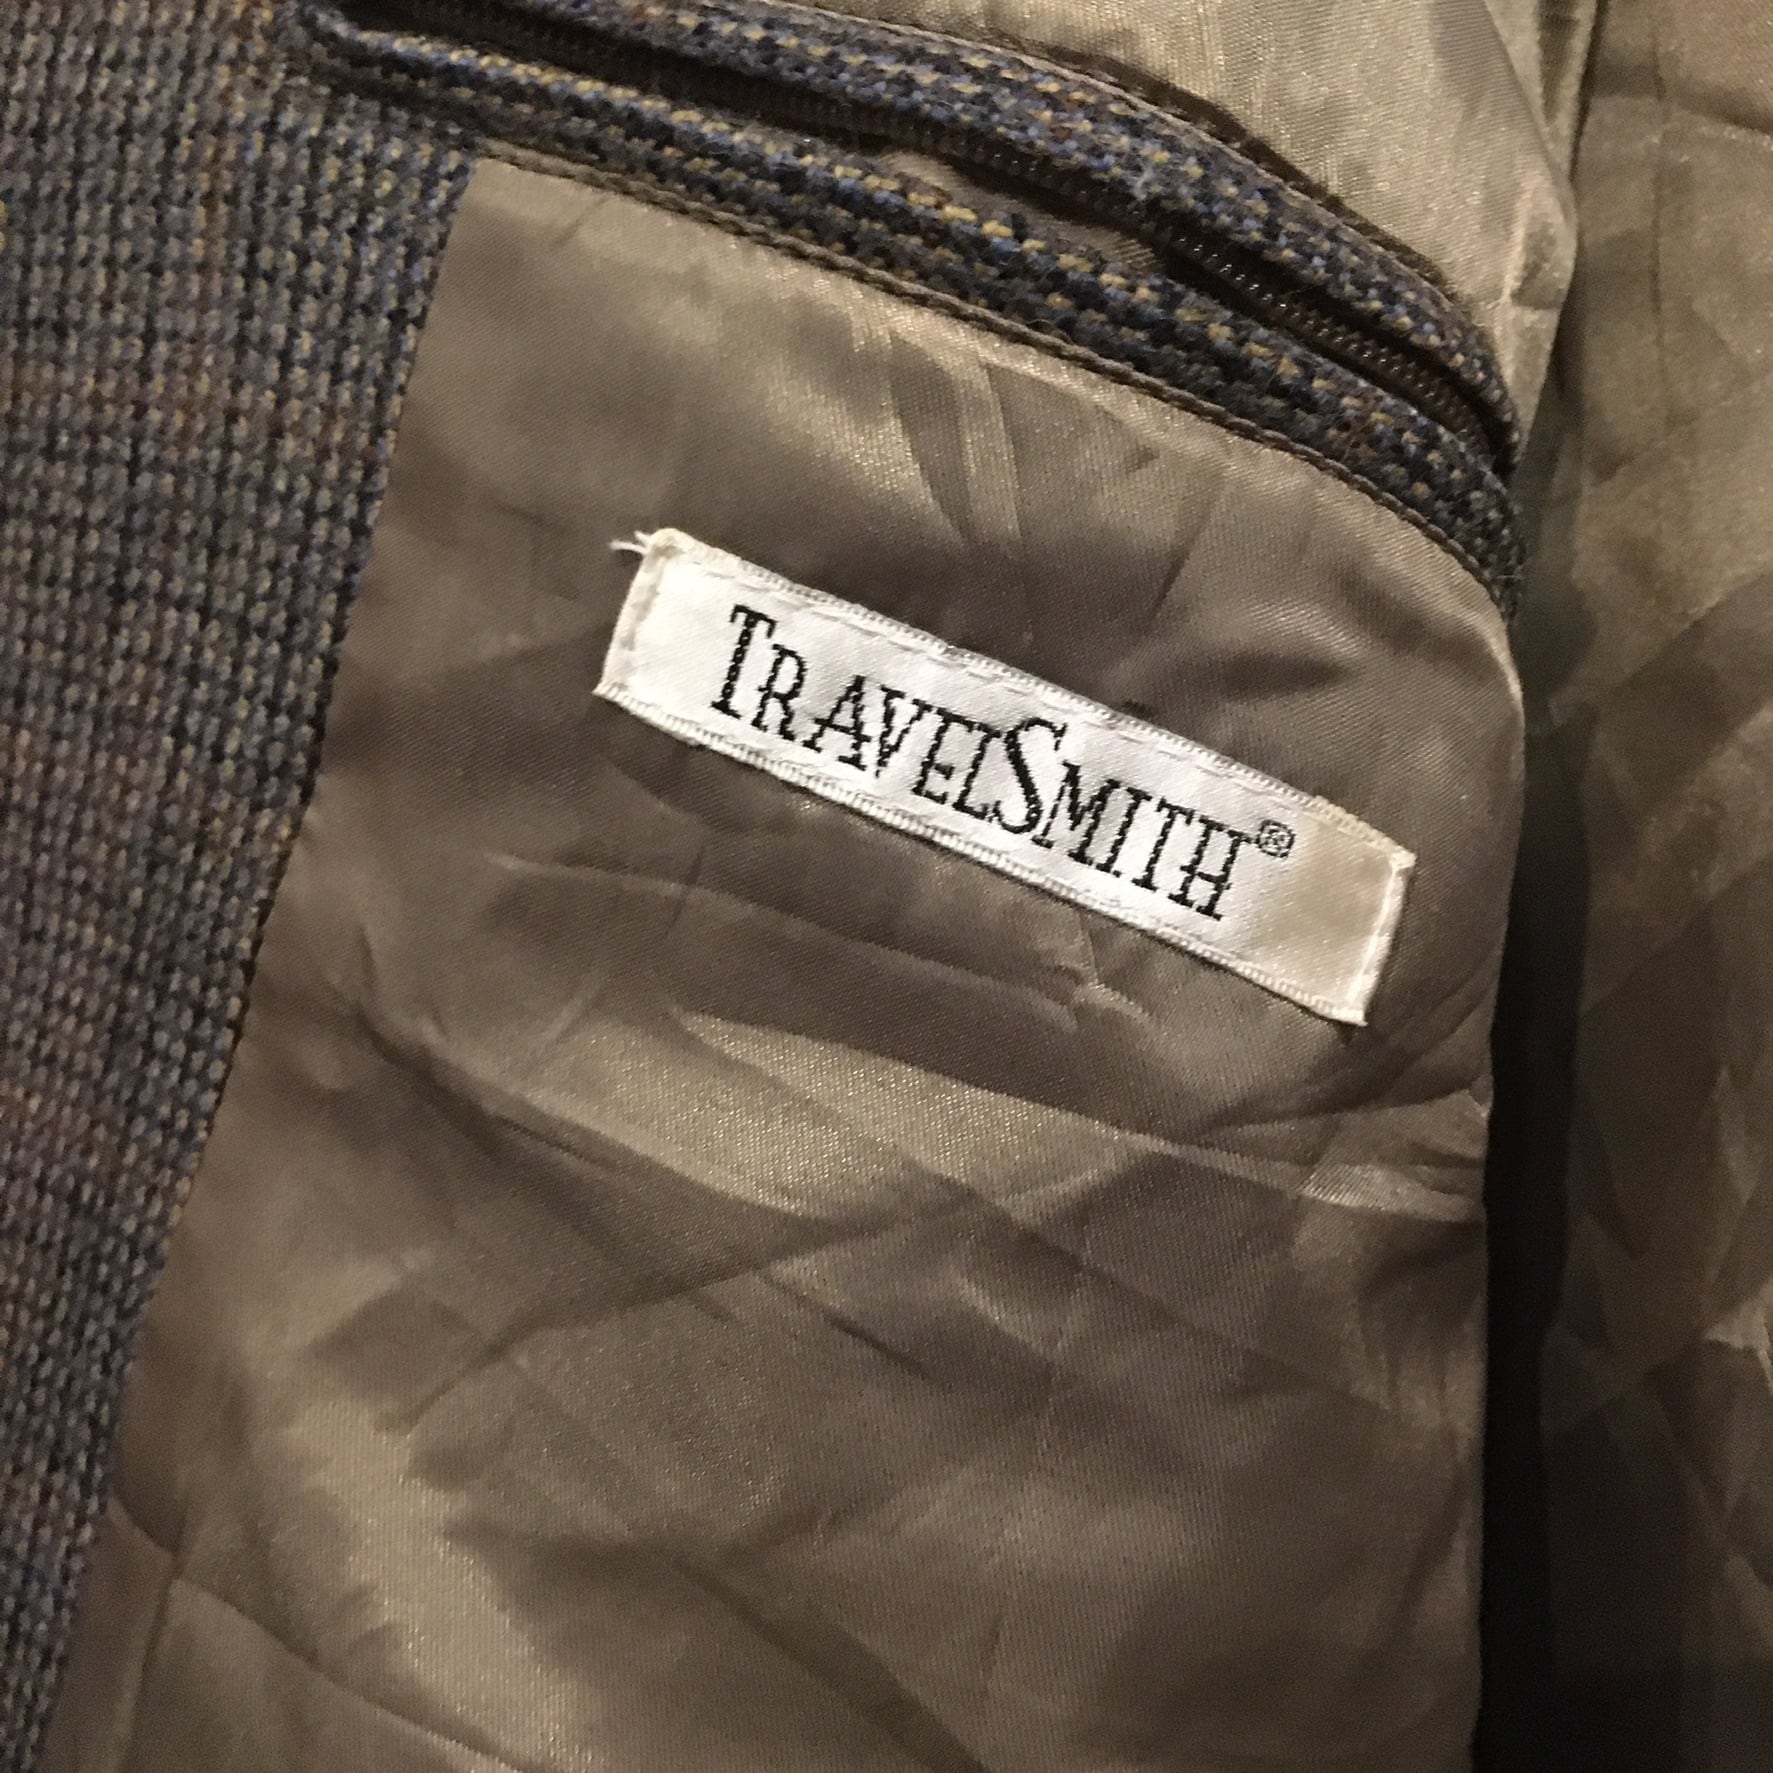 TRAVEL SMITH アメリカ古着 スウィングトップ ウールジャケット XL